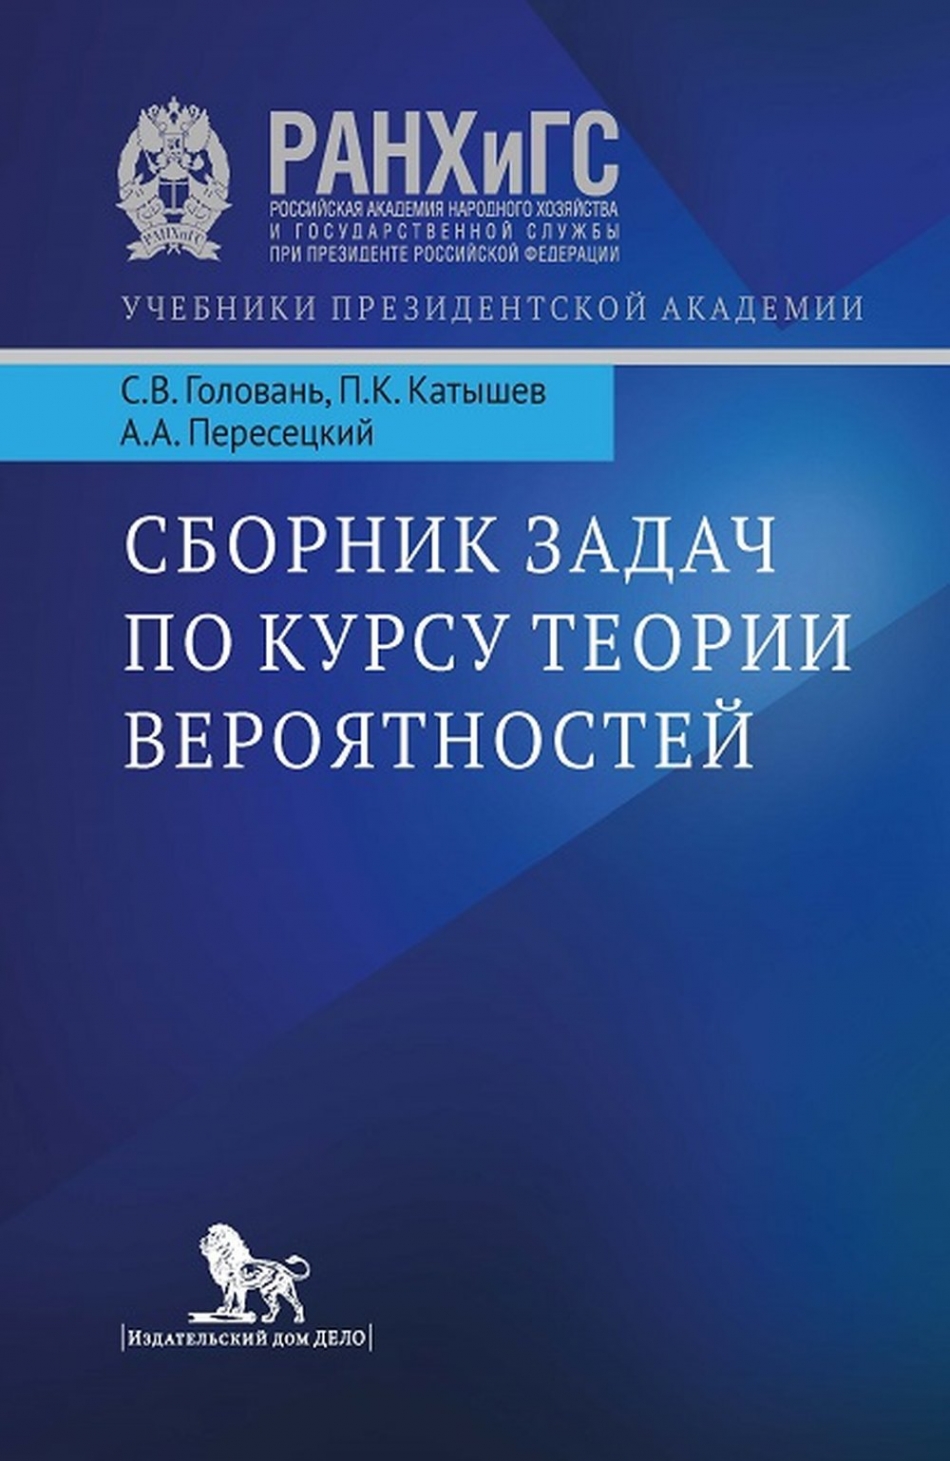 Катышев П.К., Пересецкий А.А., Головань С.В. Сборник задач по курсу теории вероятностей.  